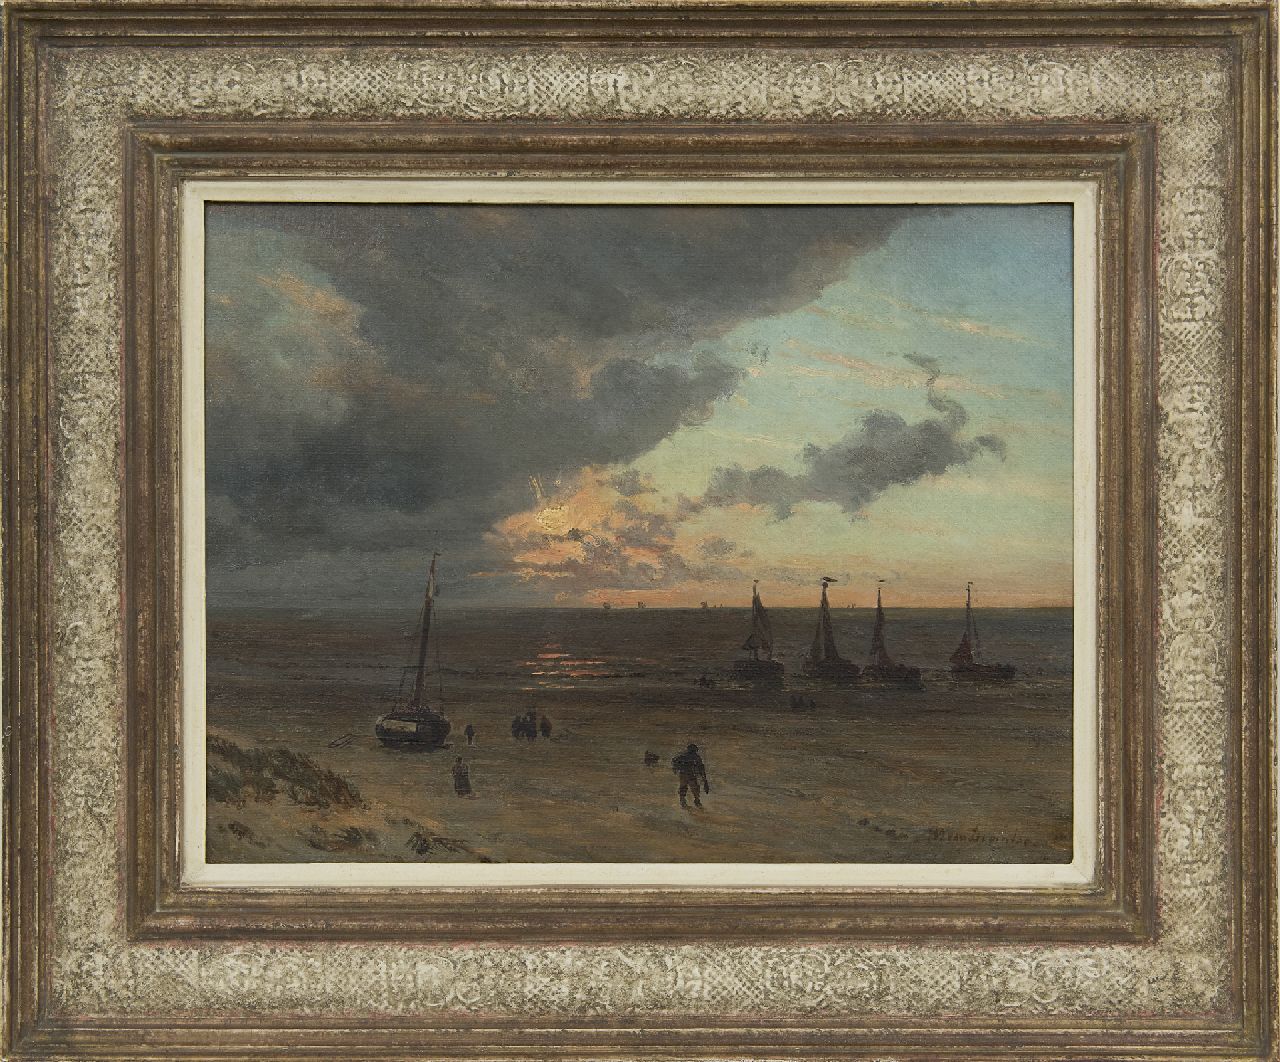 Deventer W.A. van | 'Willem' Anthonie van Deventer | Schilderijen te koop aangeboden | Strandgezicht met vissersschepen bij ondergaande zon, olieverf op papier op paneel 32,0 x 41,6 cm, gesigneerd rechtsonder